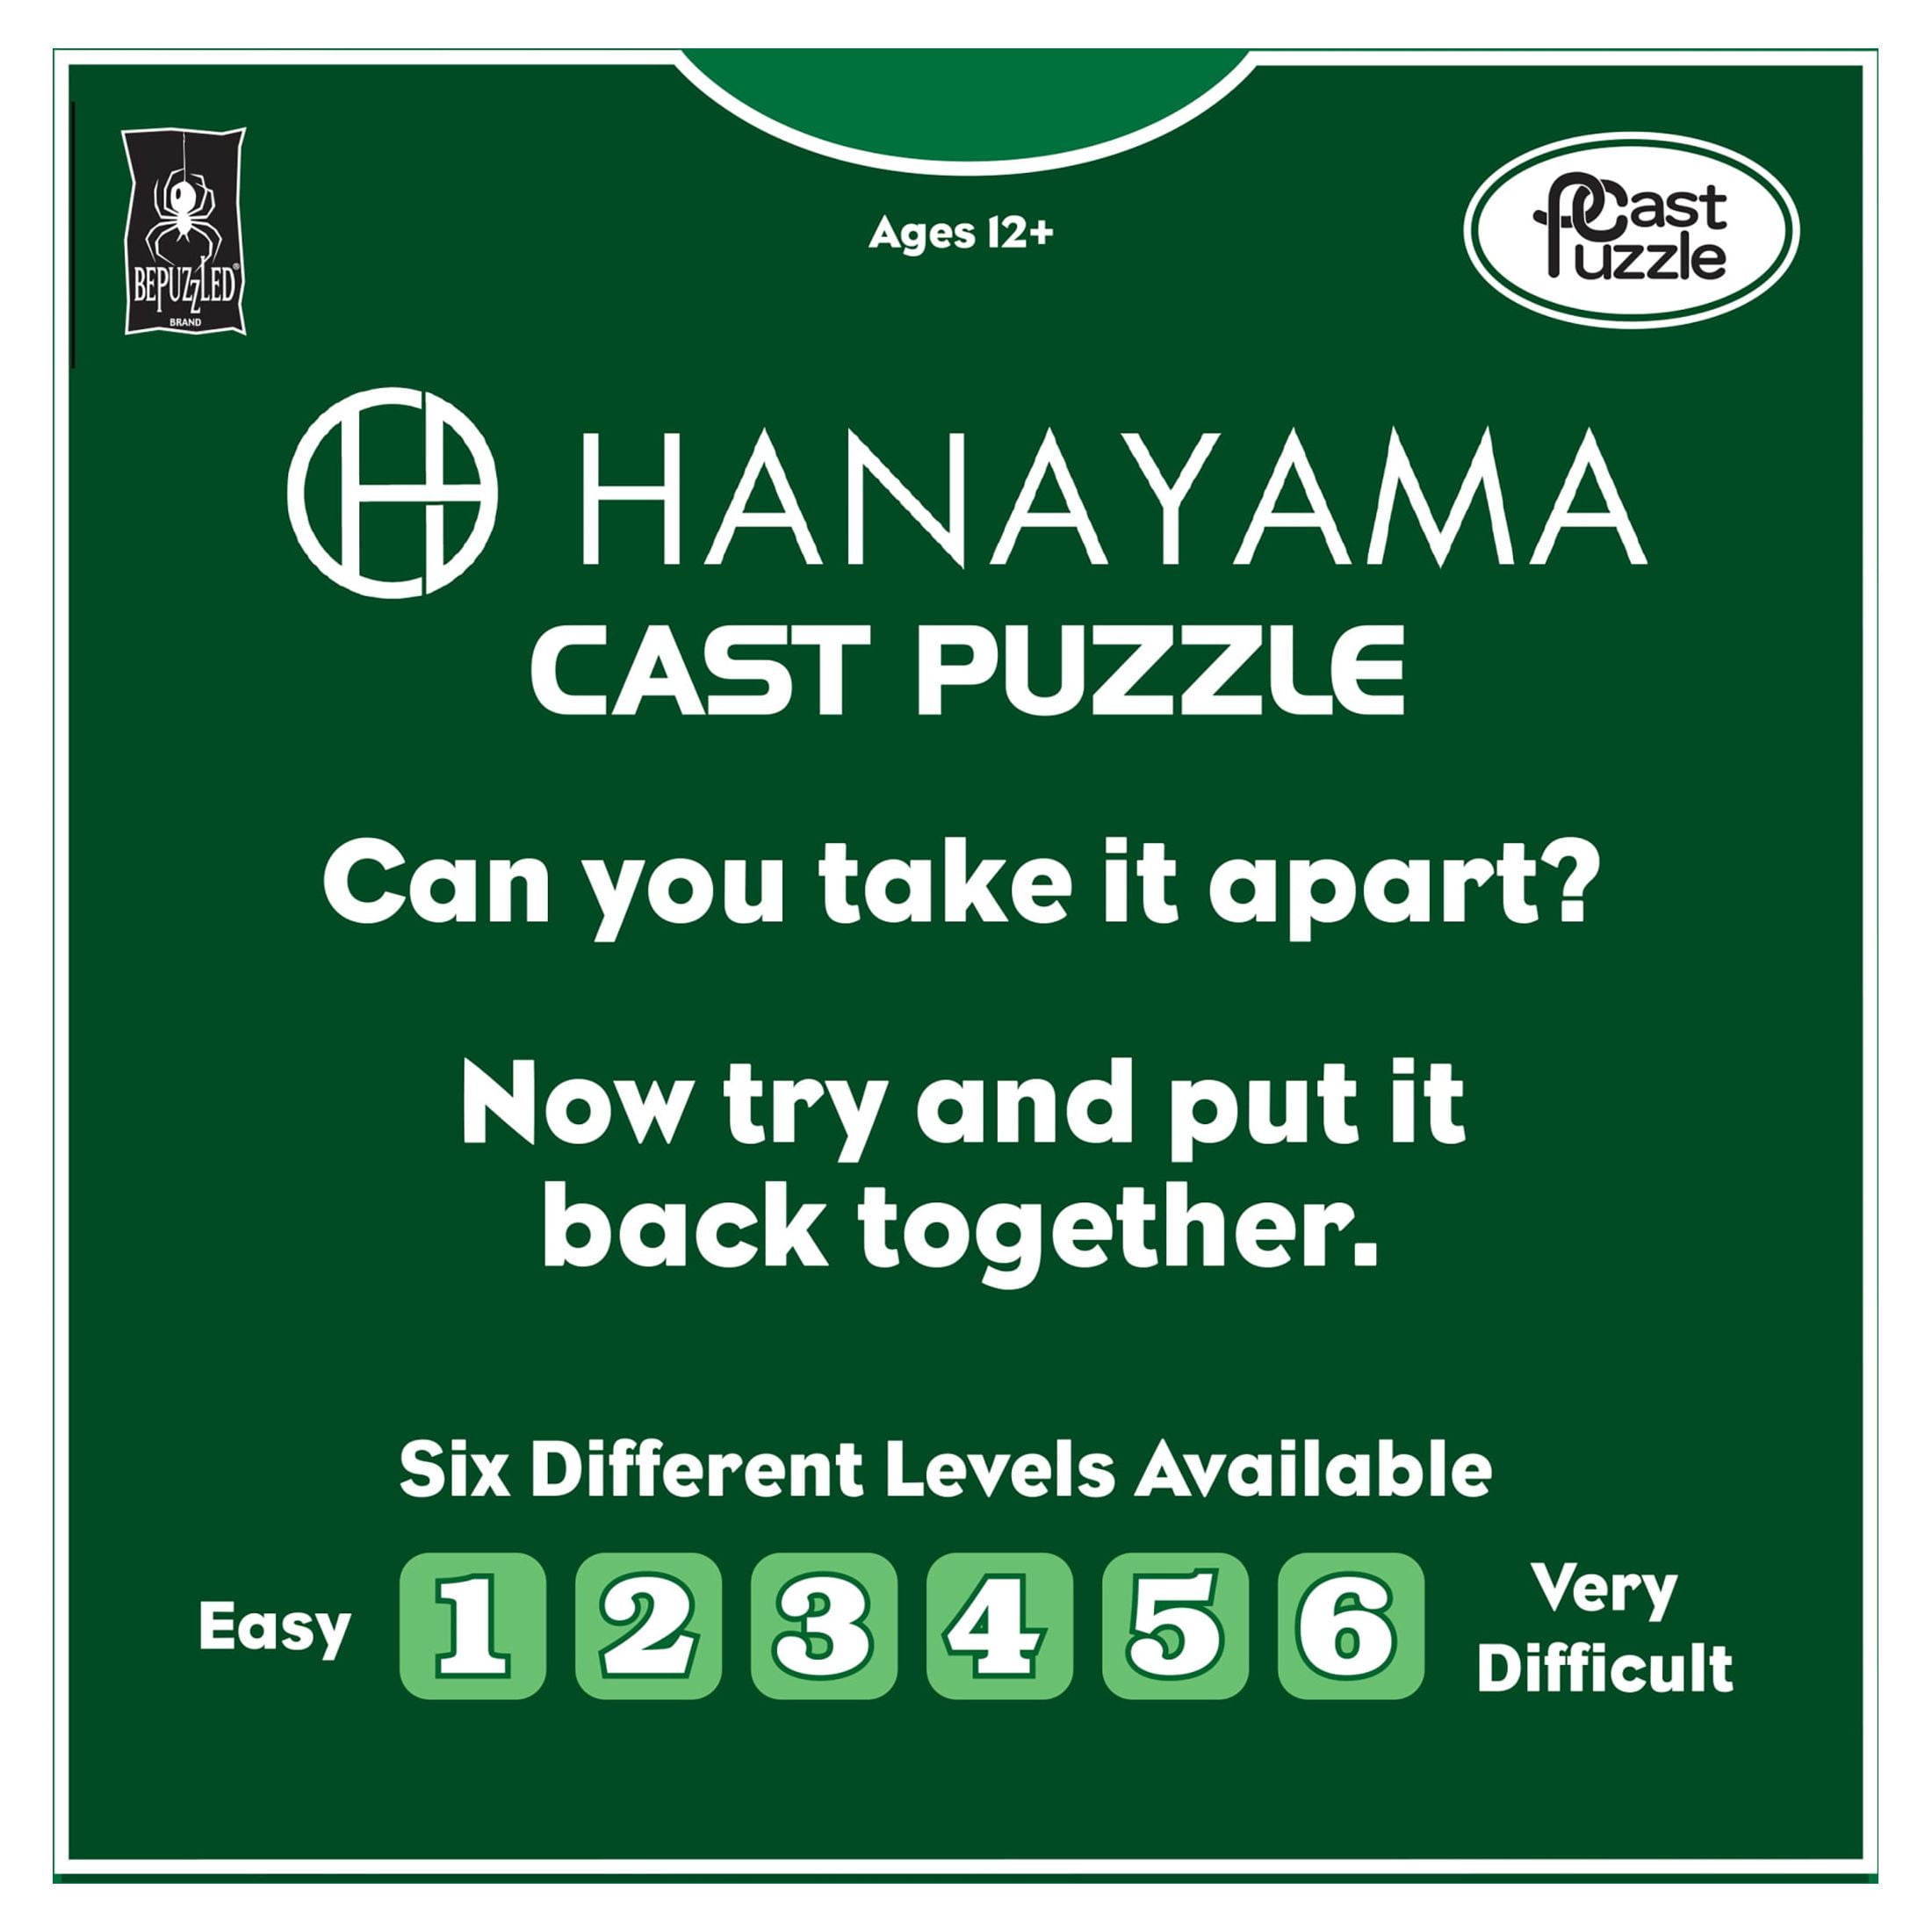 Cast Galaxy casse-tête métal Collection HANAYAMA niveau 3 puzzle 3d